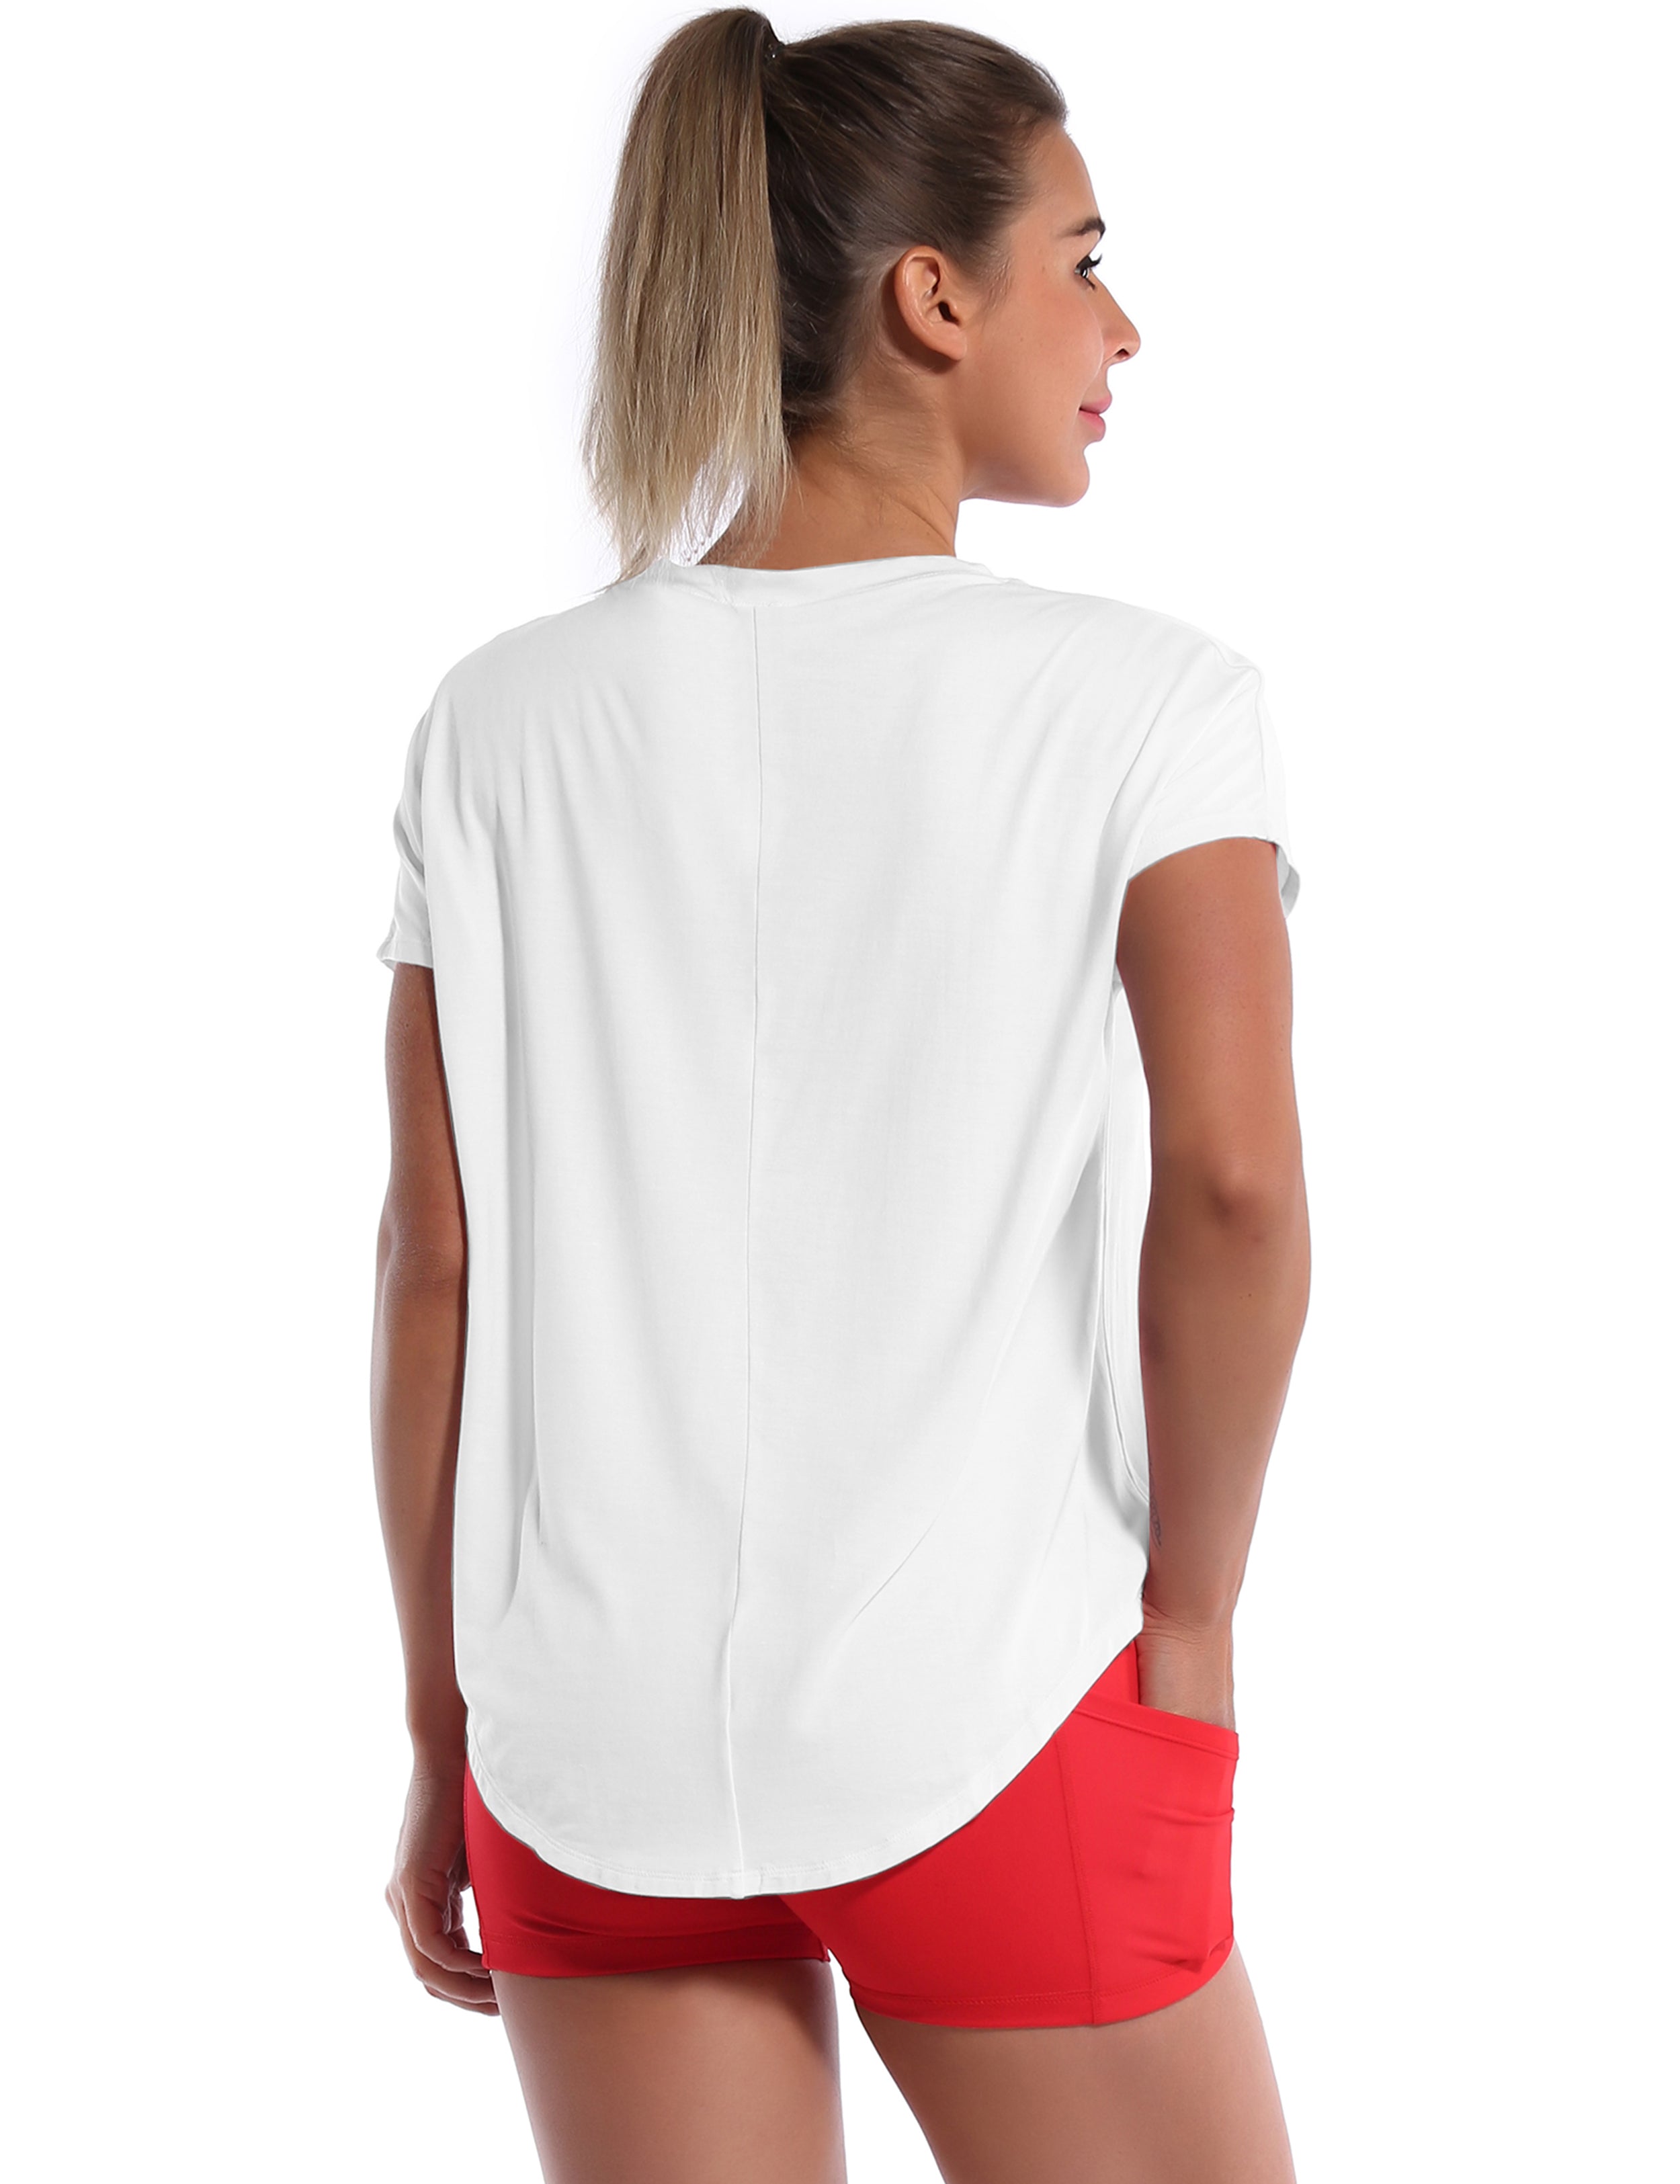 Hip Length Short Sleeve Shirt white_Golf